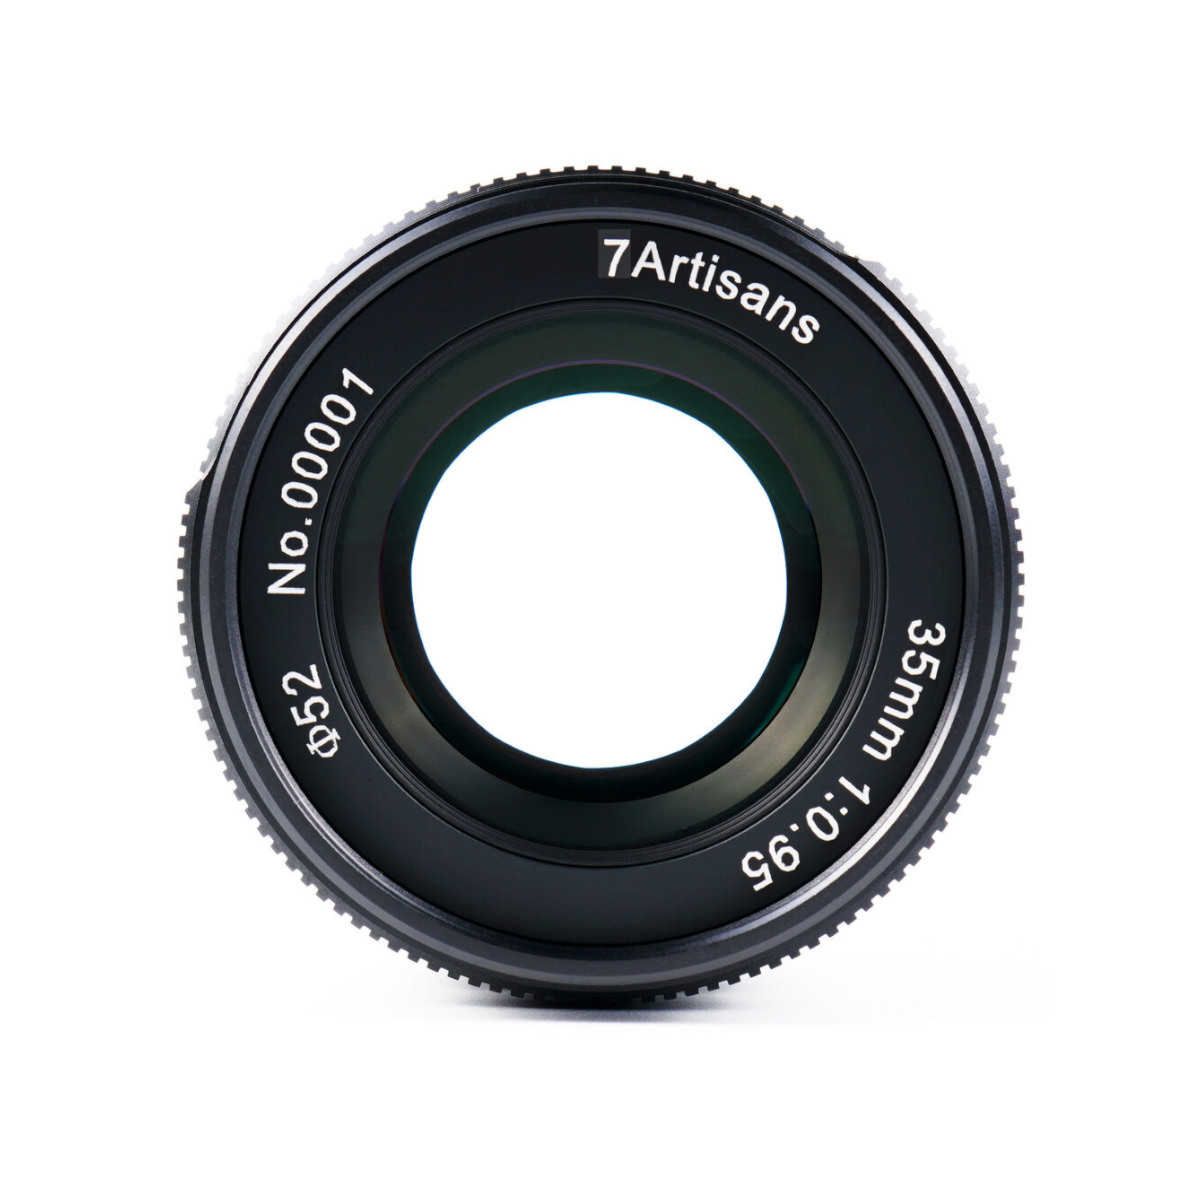 7artisans 35mm F 0.95 Lens For Sony E